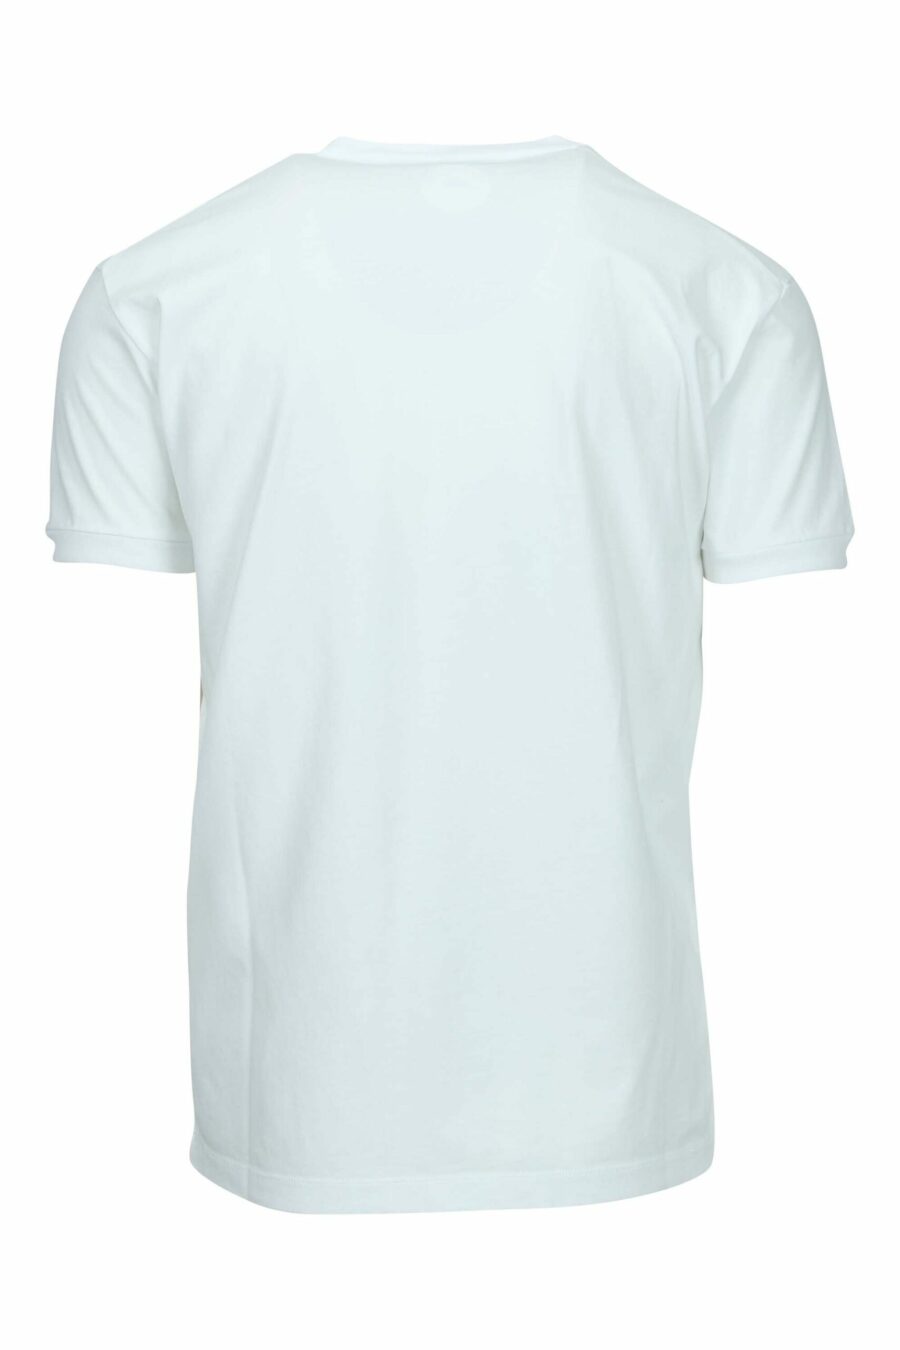 Camiseta blanca con maxilogo multicolor graffiti - 8054148570620 1 scaled